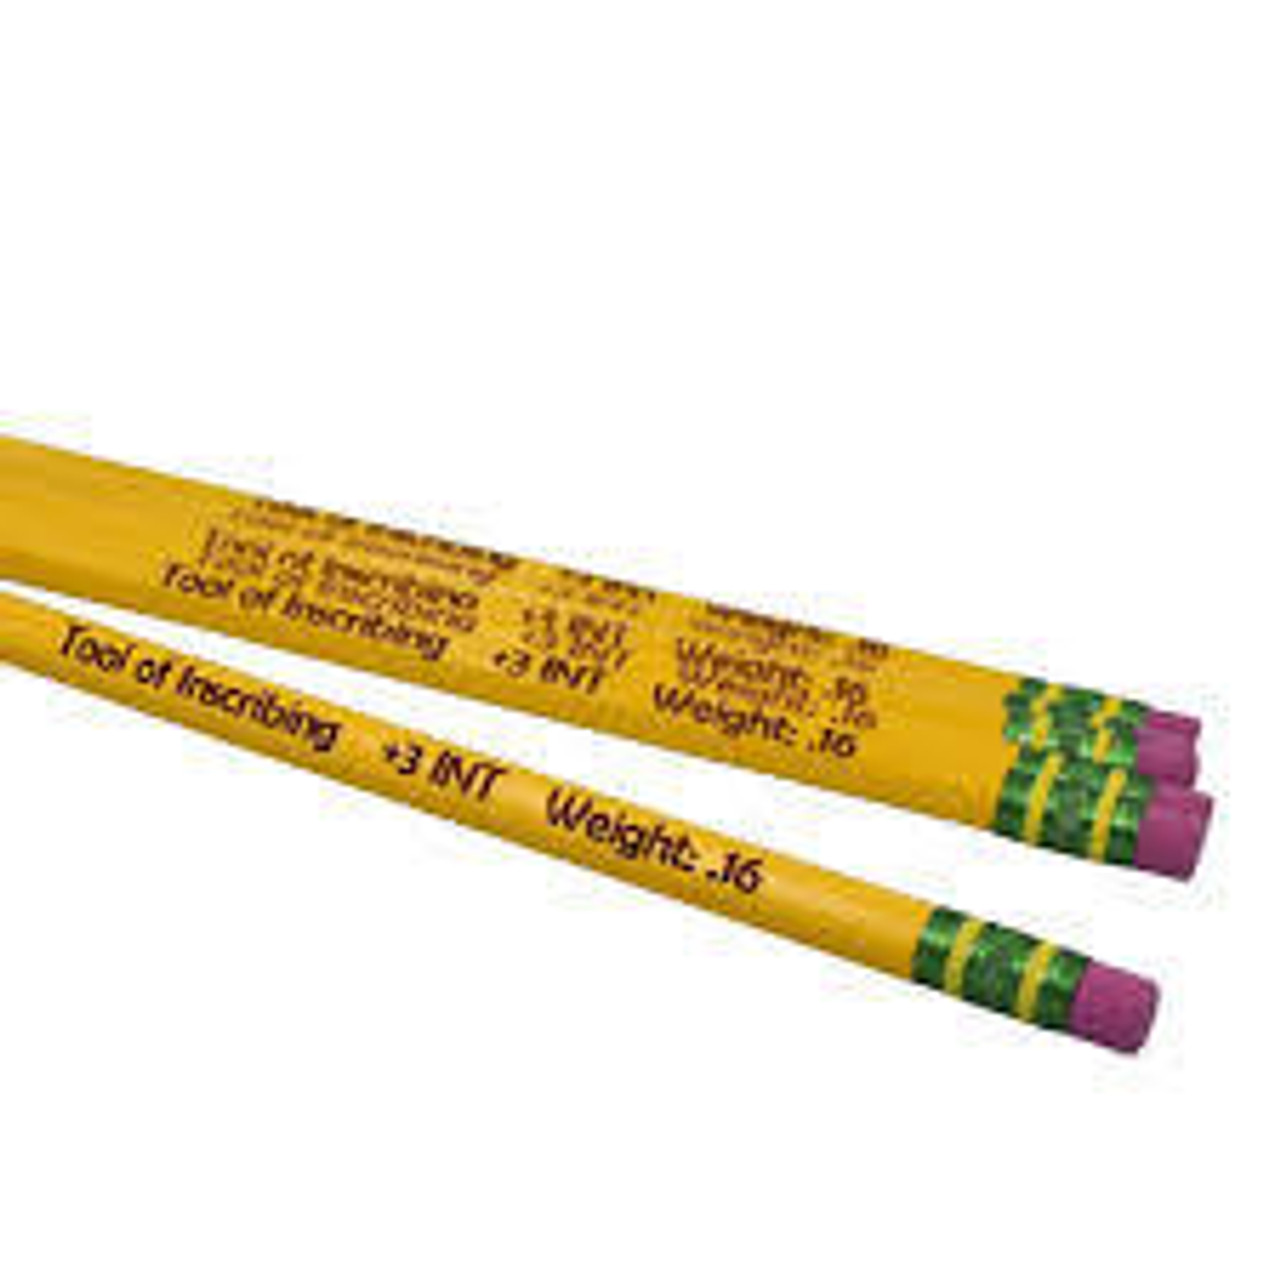 Dixon - Ticonderoga Pencil - Ticonderoga Pencils, 4/Pkg. - Carded - Sam  Flax Atlanta